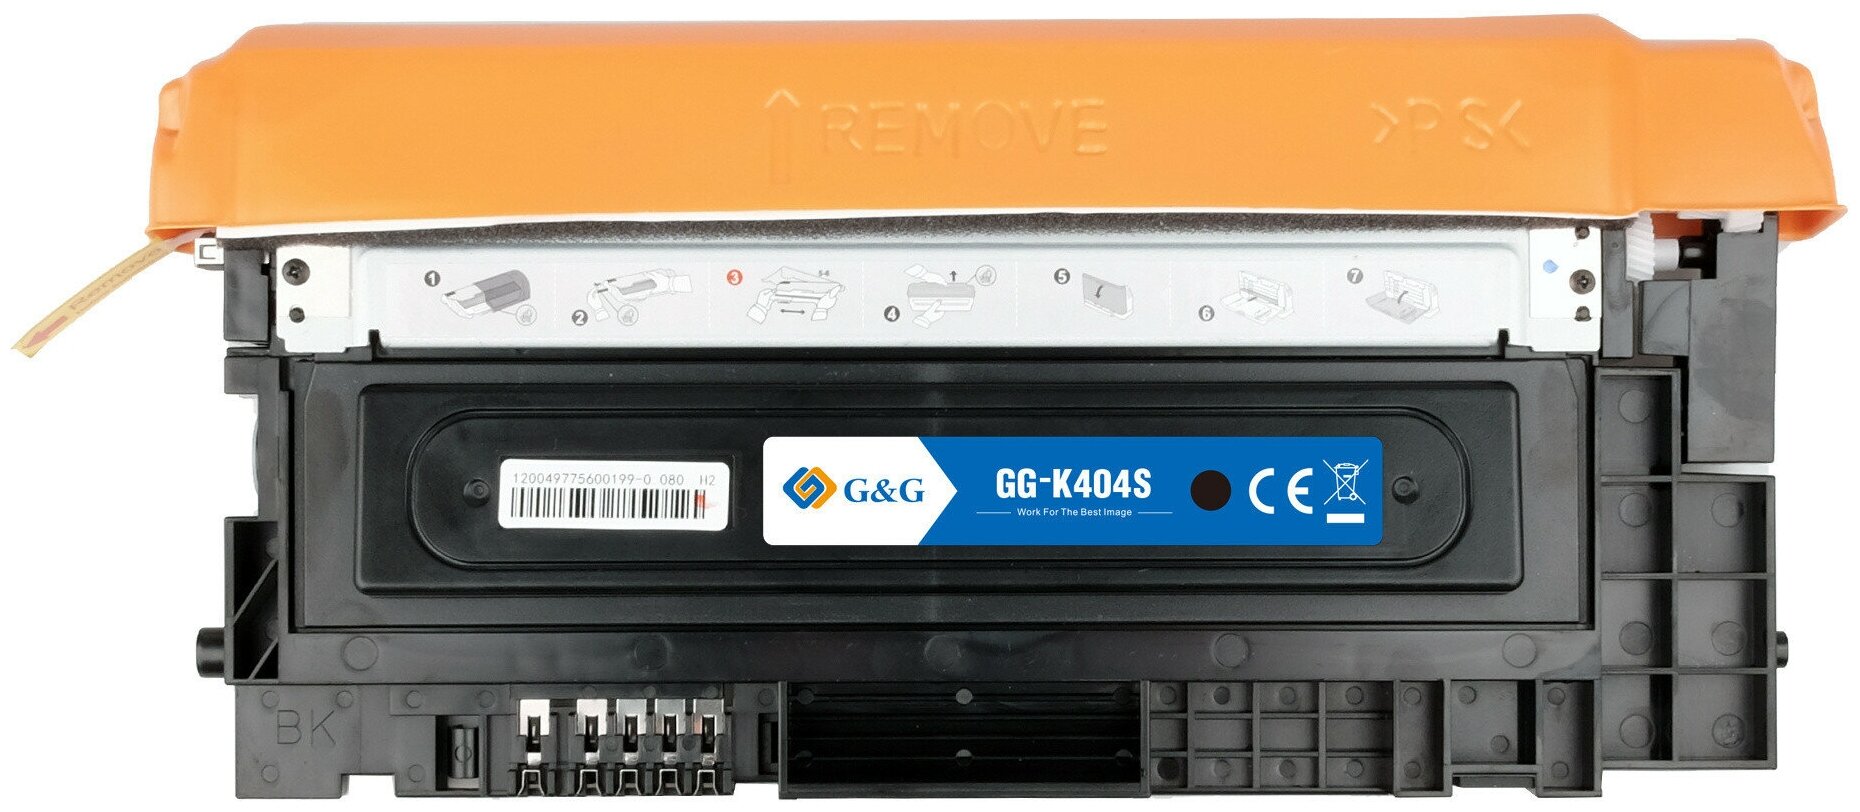 Картридж лазерный G&G GG-K404S черный (1500стр.) для Samsung SL-C430/C430W/C480/C480W/C480FW